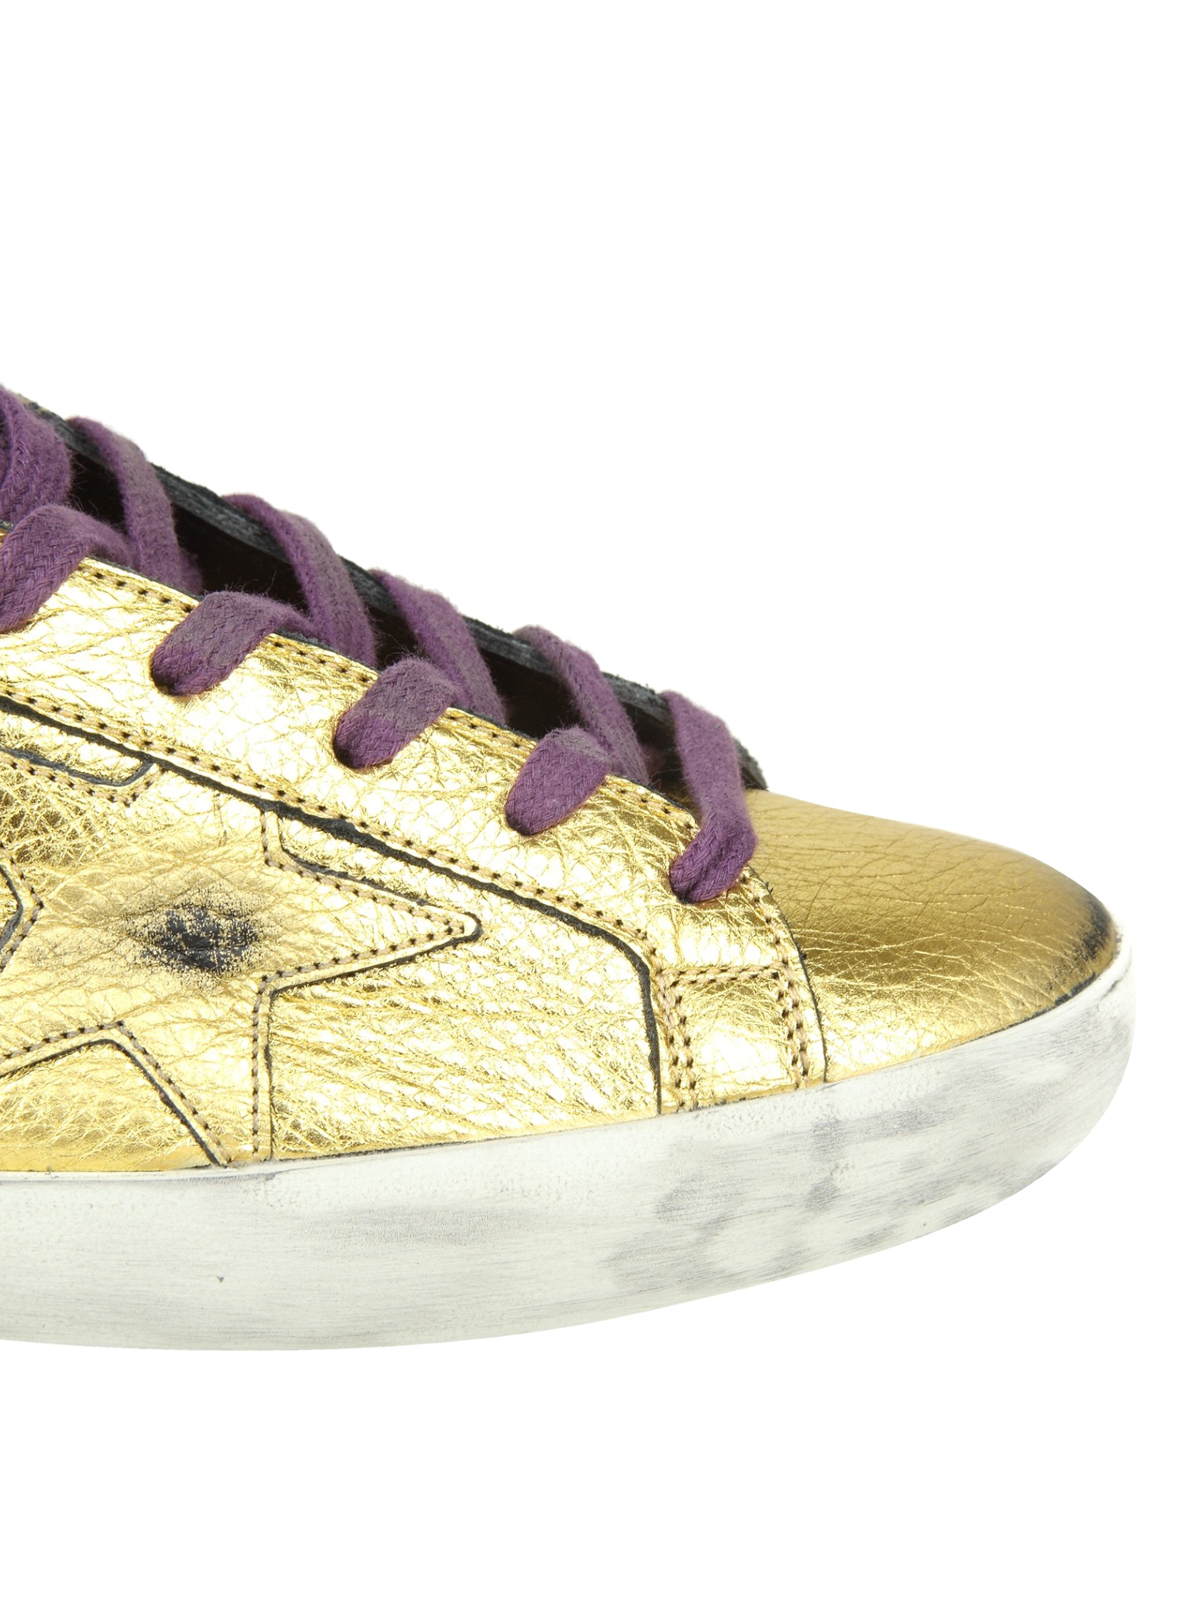 golden goose superstar tonal leather sneakers